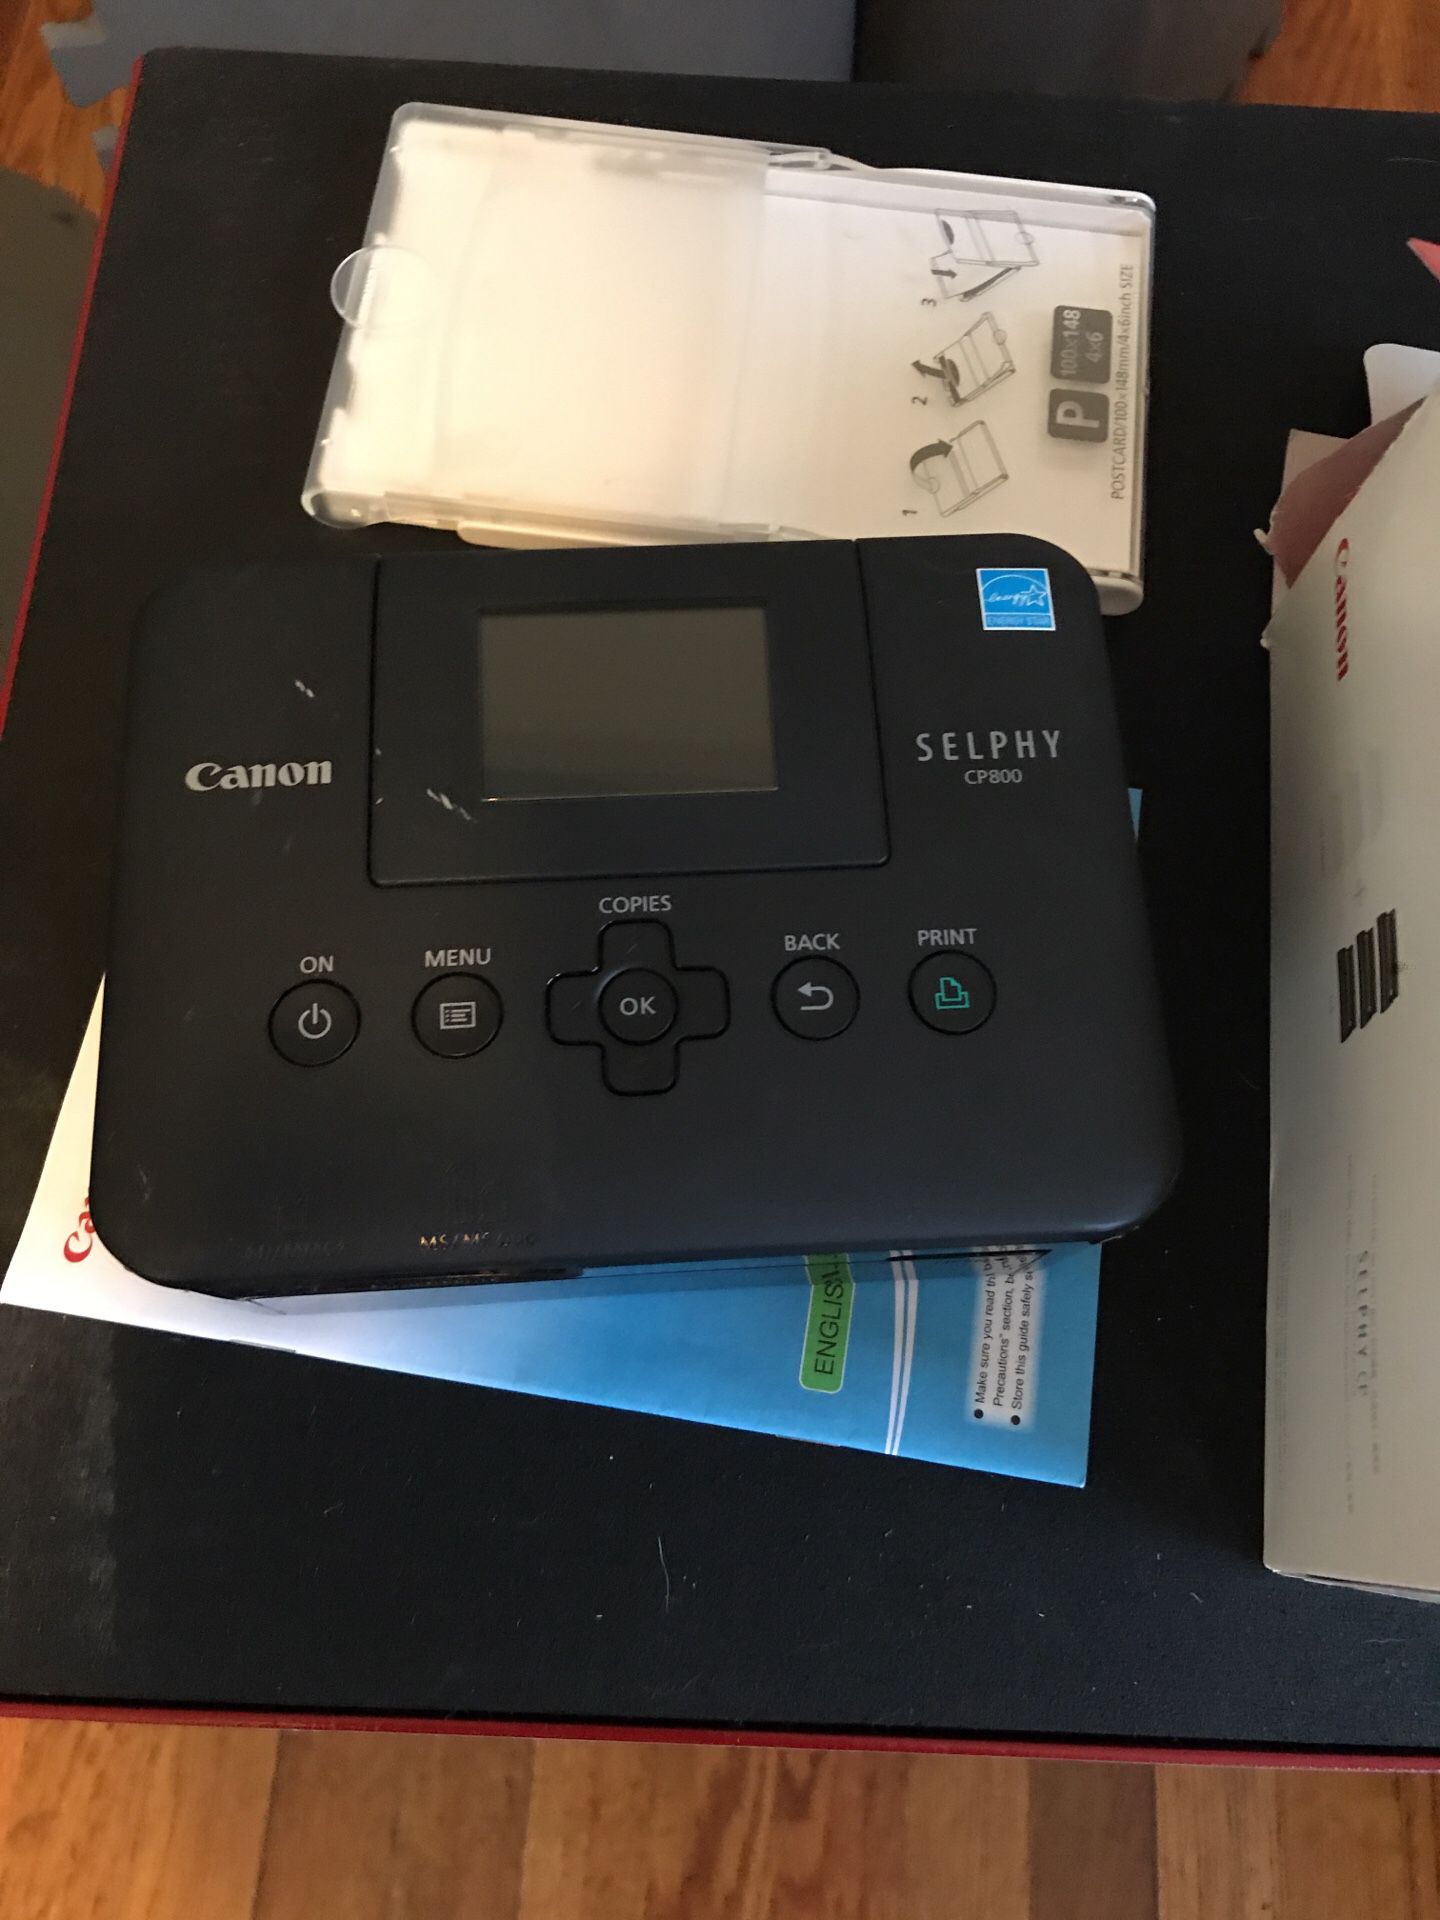 Canon Selphy compact photo printer